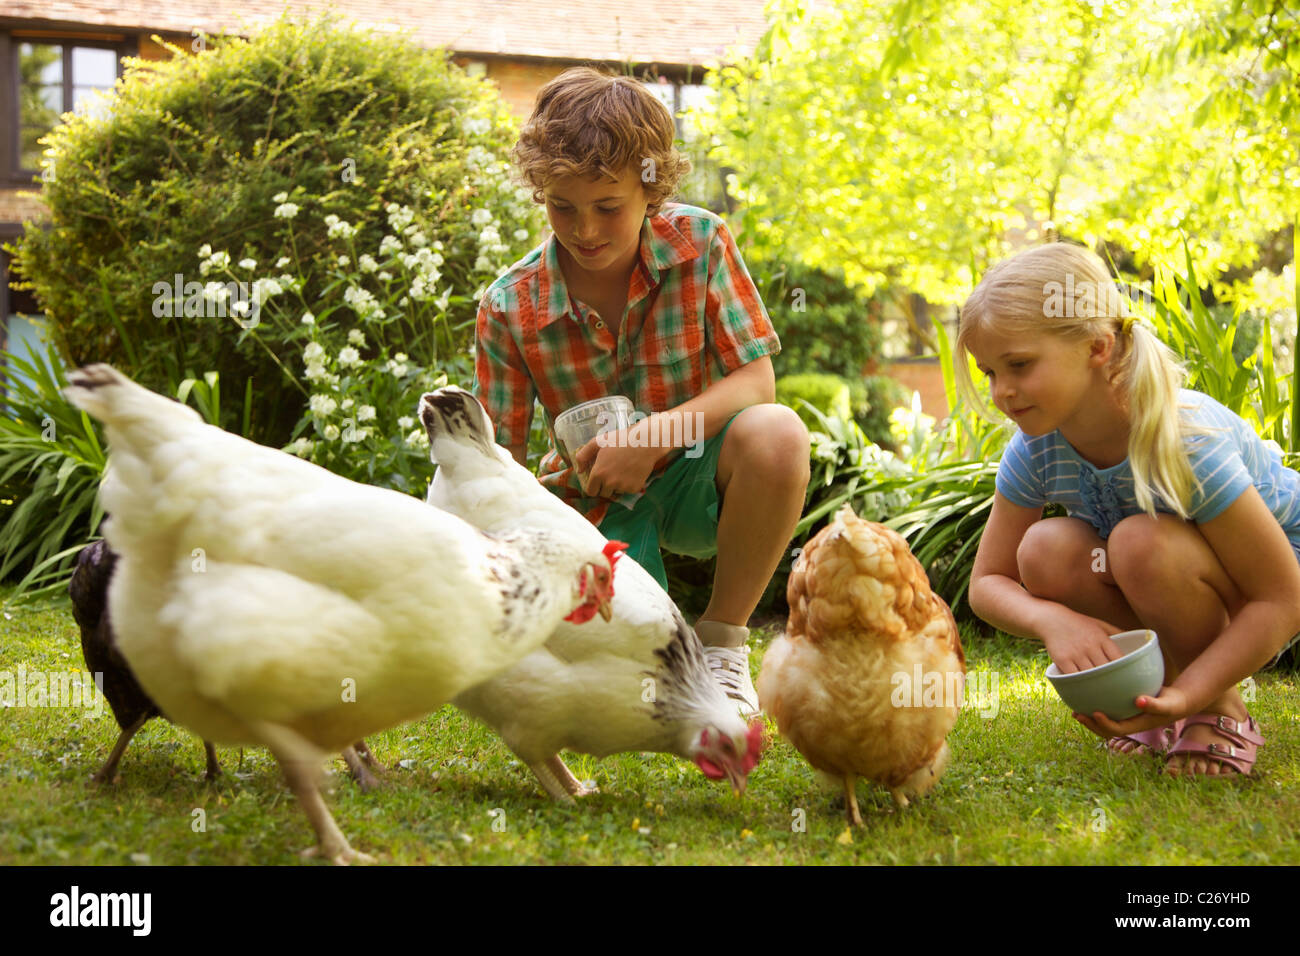 Chico y chica alimentando pollos en el jardín Foto de stock